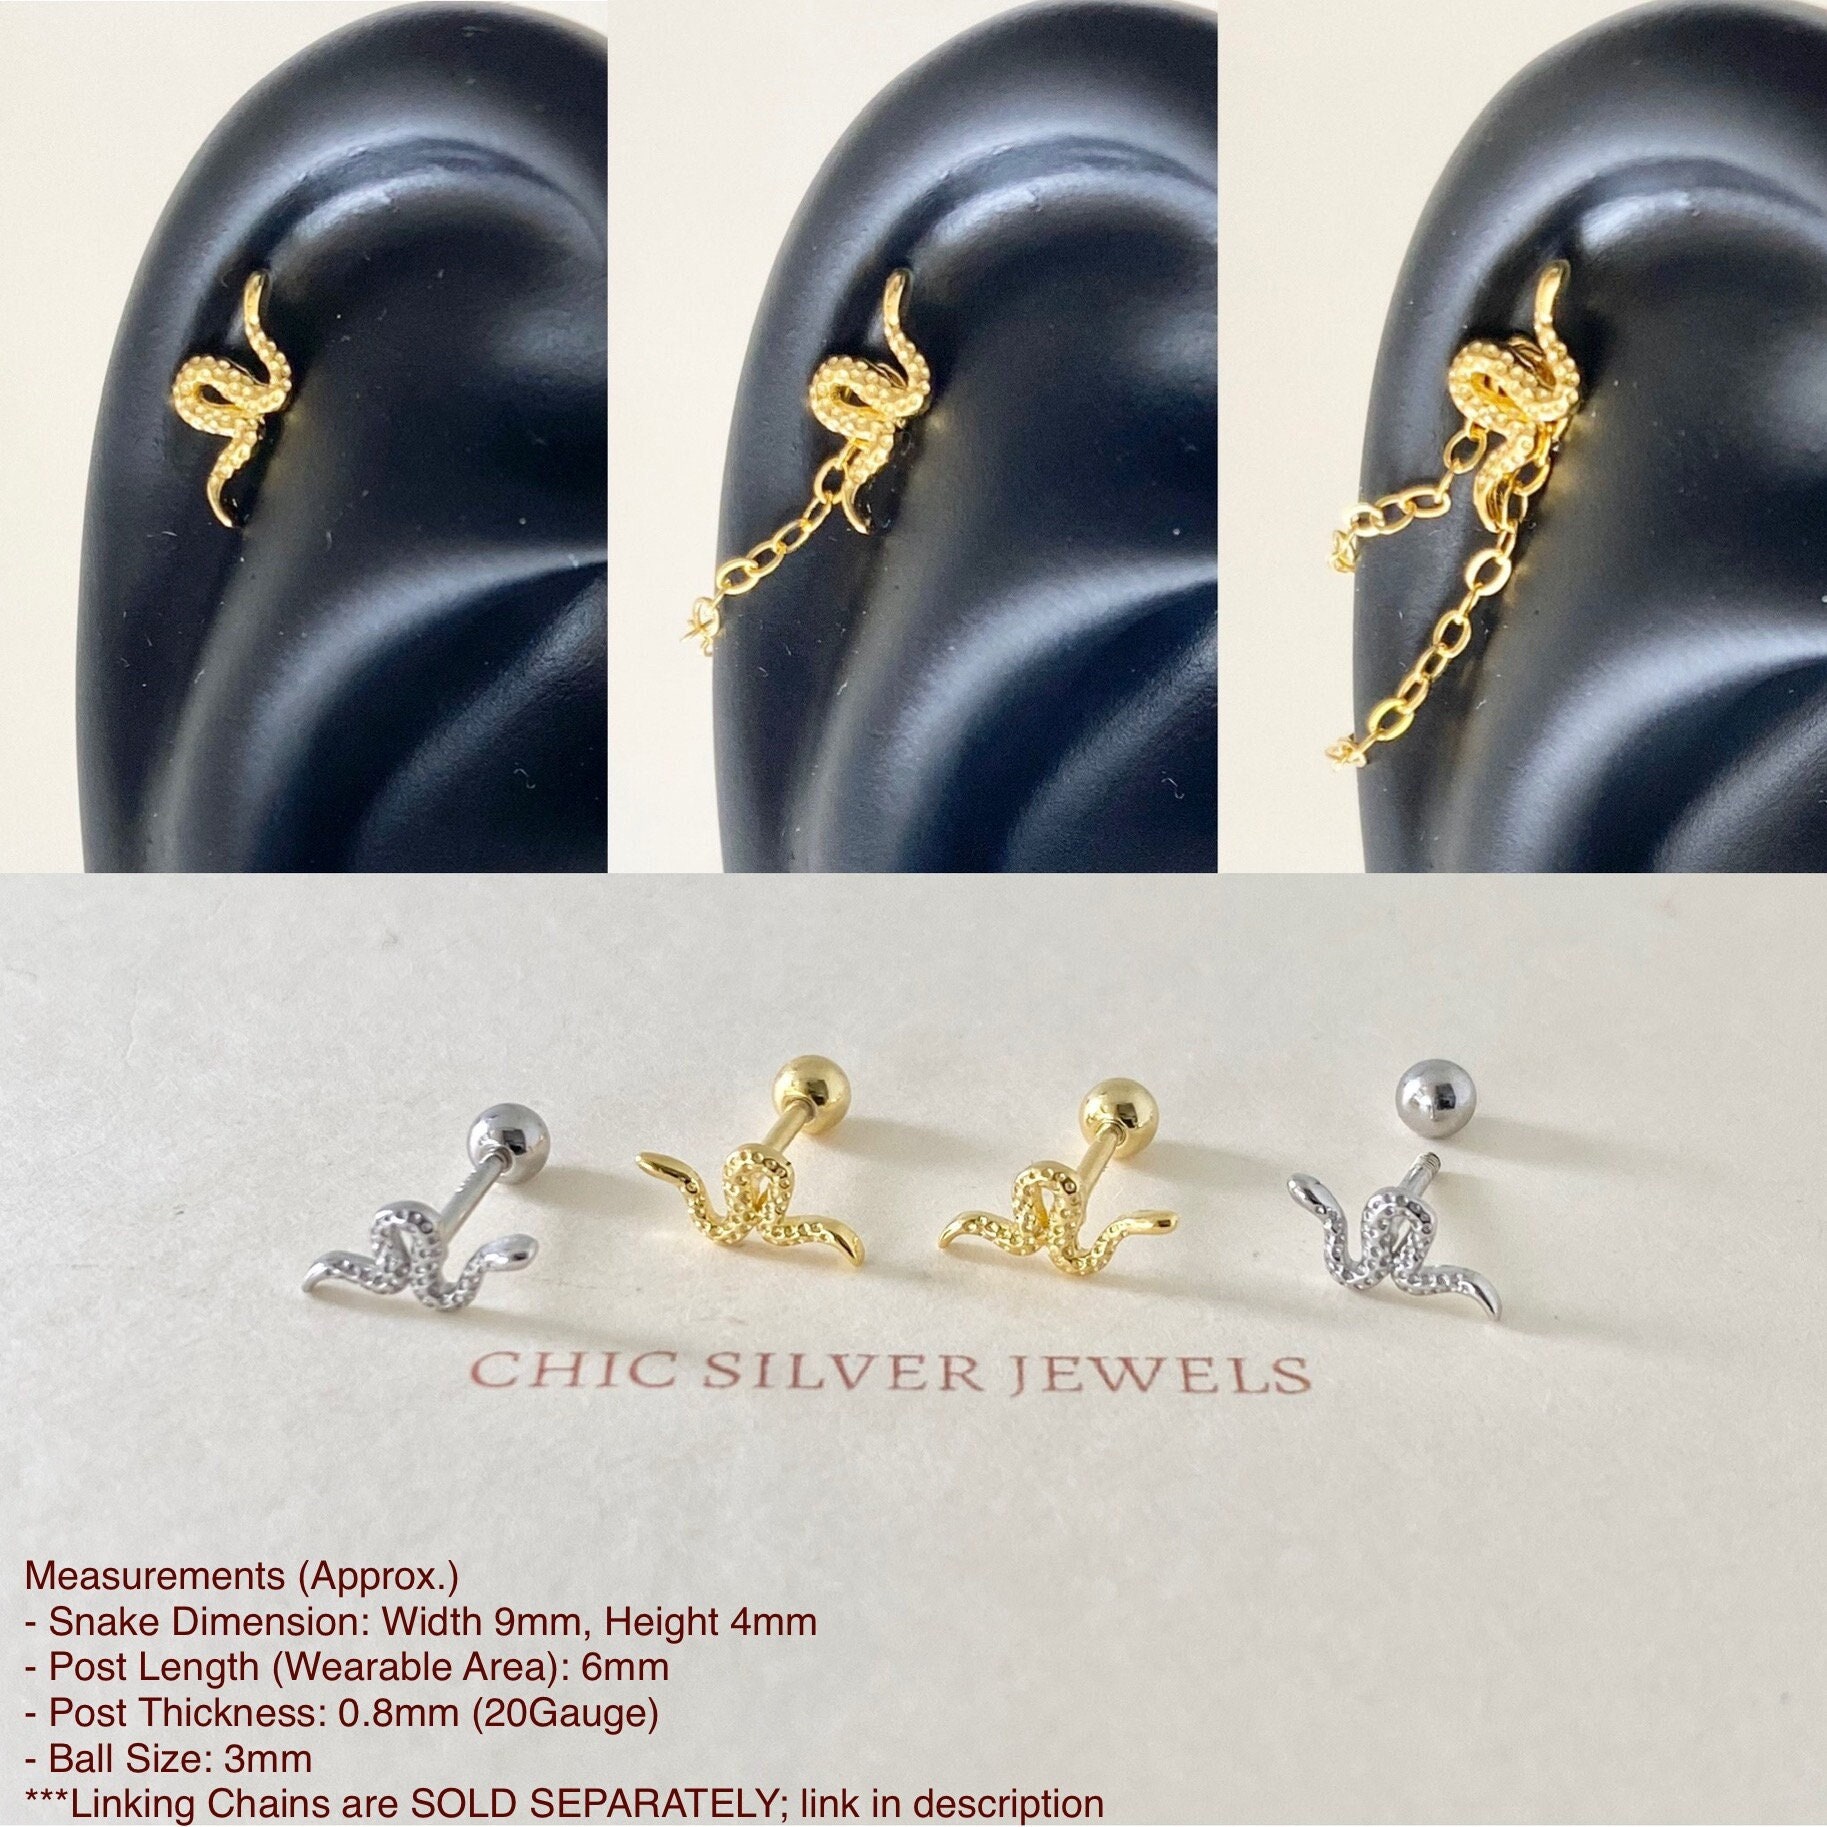 Moonstone Screw Back Earrings in Sterling Silver, Aurora Barbell Earrings, Screw  Back Crystal Dot Earrings, Minimalist Piercing Jewellery 